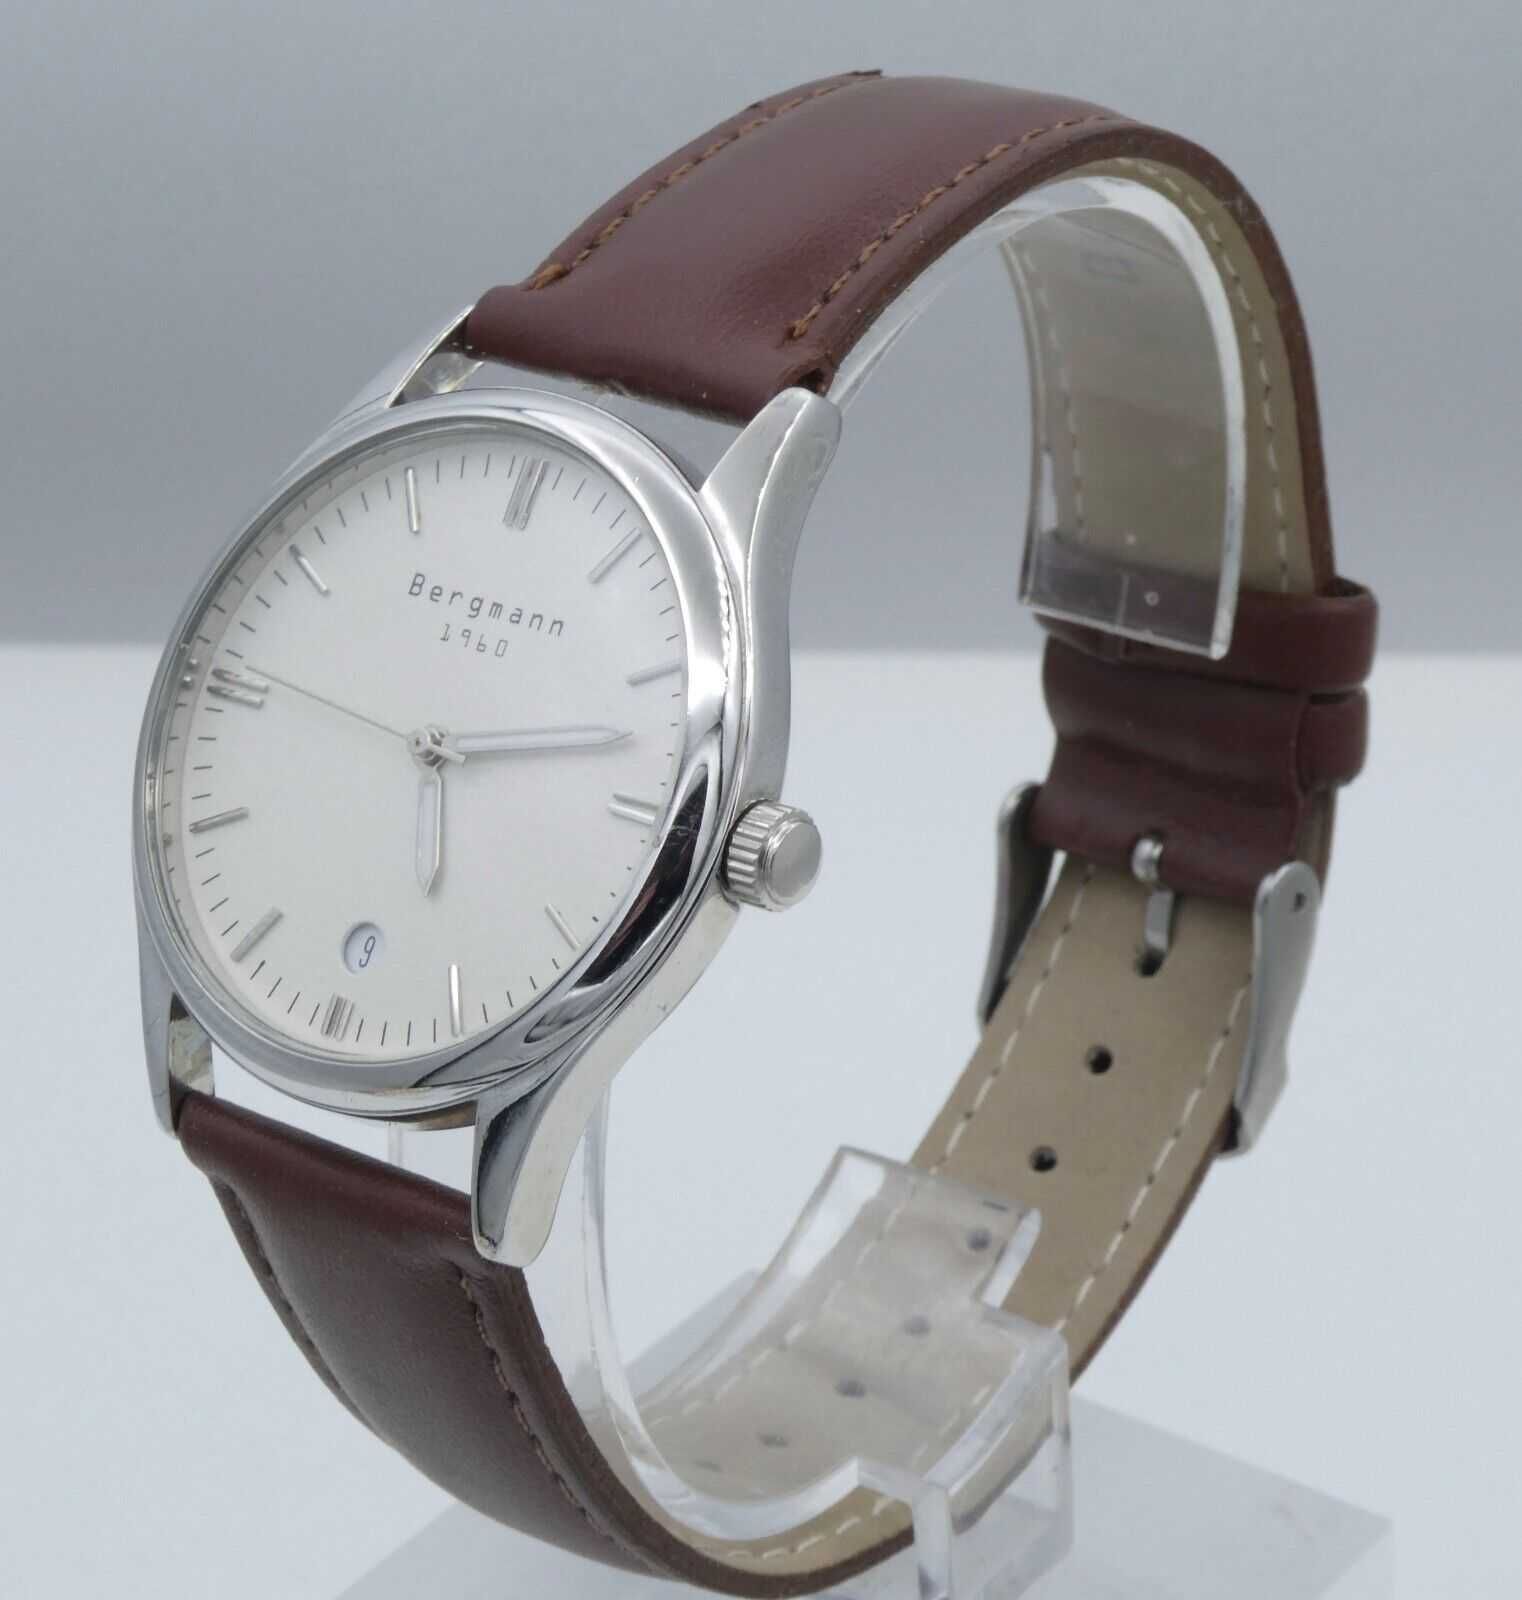 Męski zegarek Bergmann 1960